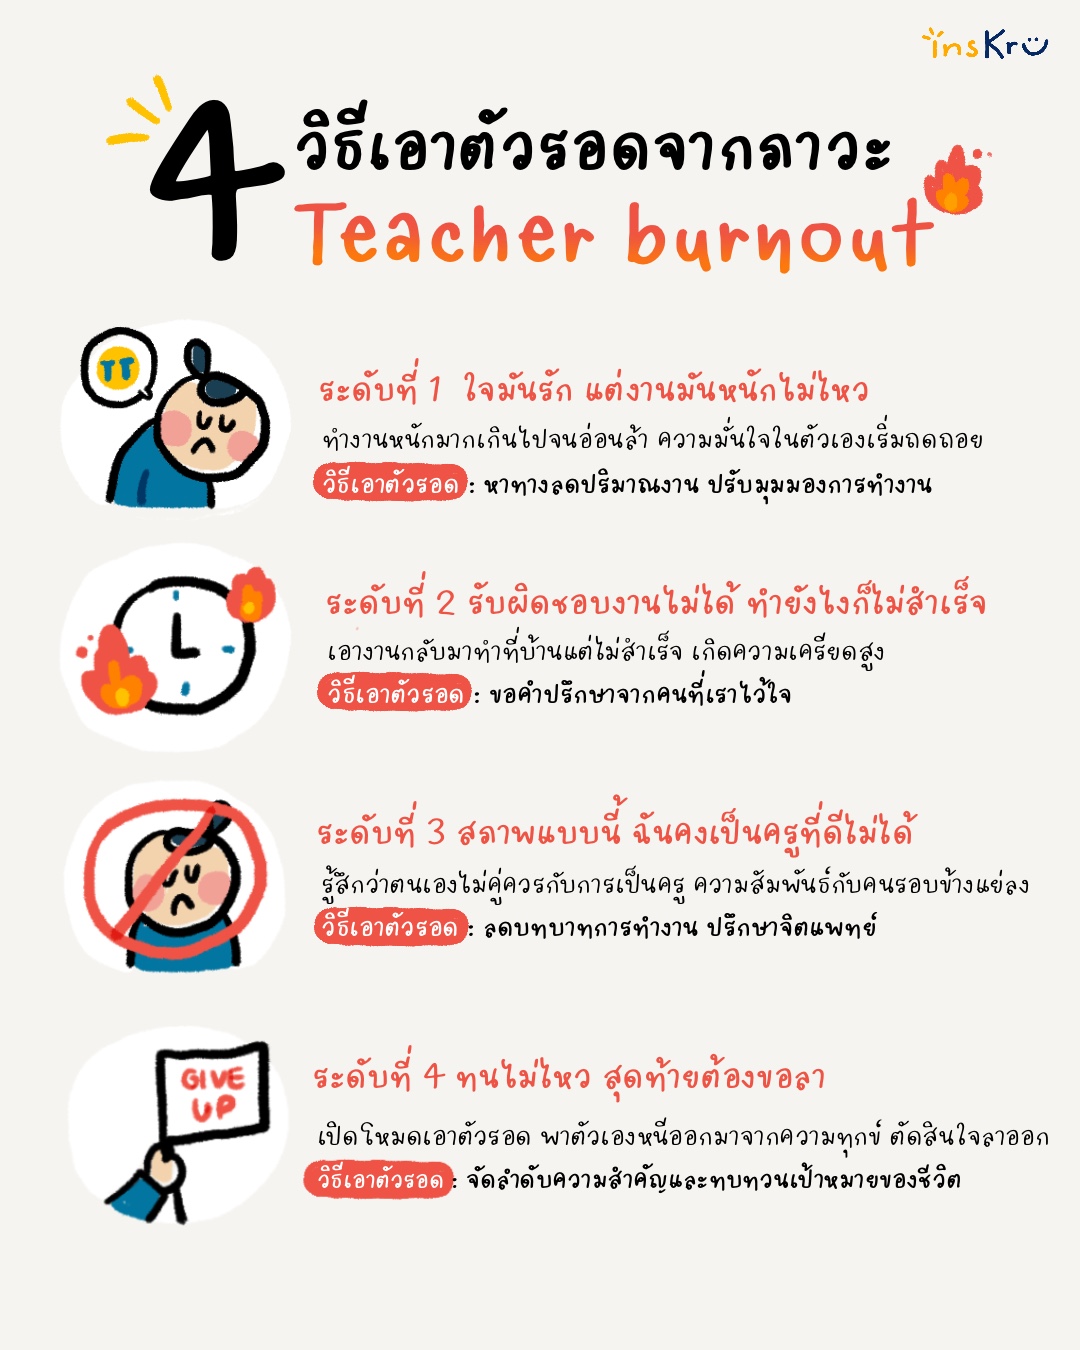 ภาพประกอบไอเดีย 🔥 4 วิธีเอาตัวรอดจากภาวะ Teacher burnout 